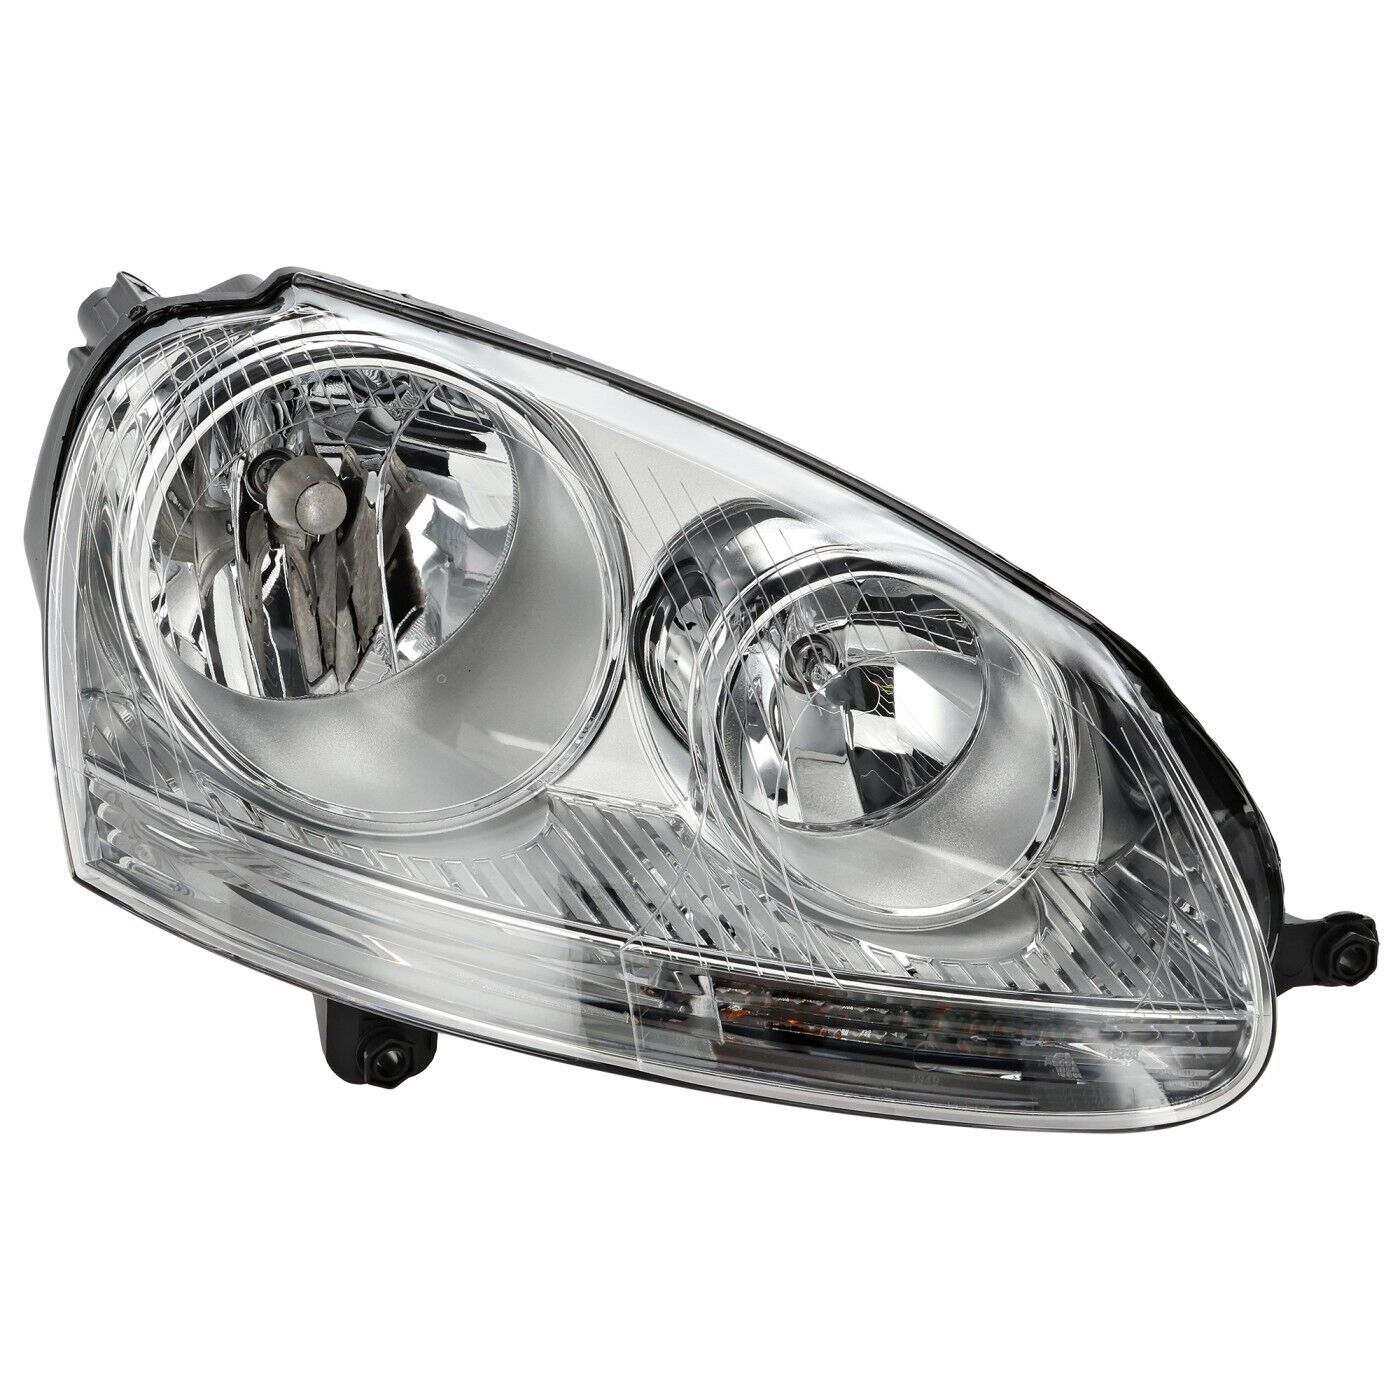 Halogen Headlight For 06-10 Volkswagen Jetta 06-09 Rabbit Passenger Side w/ bulb